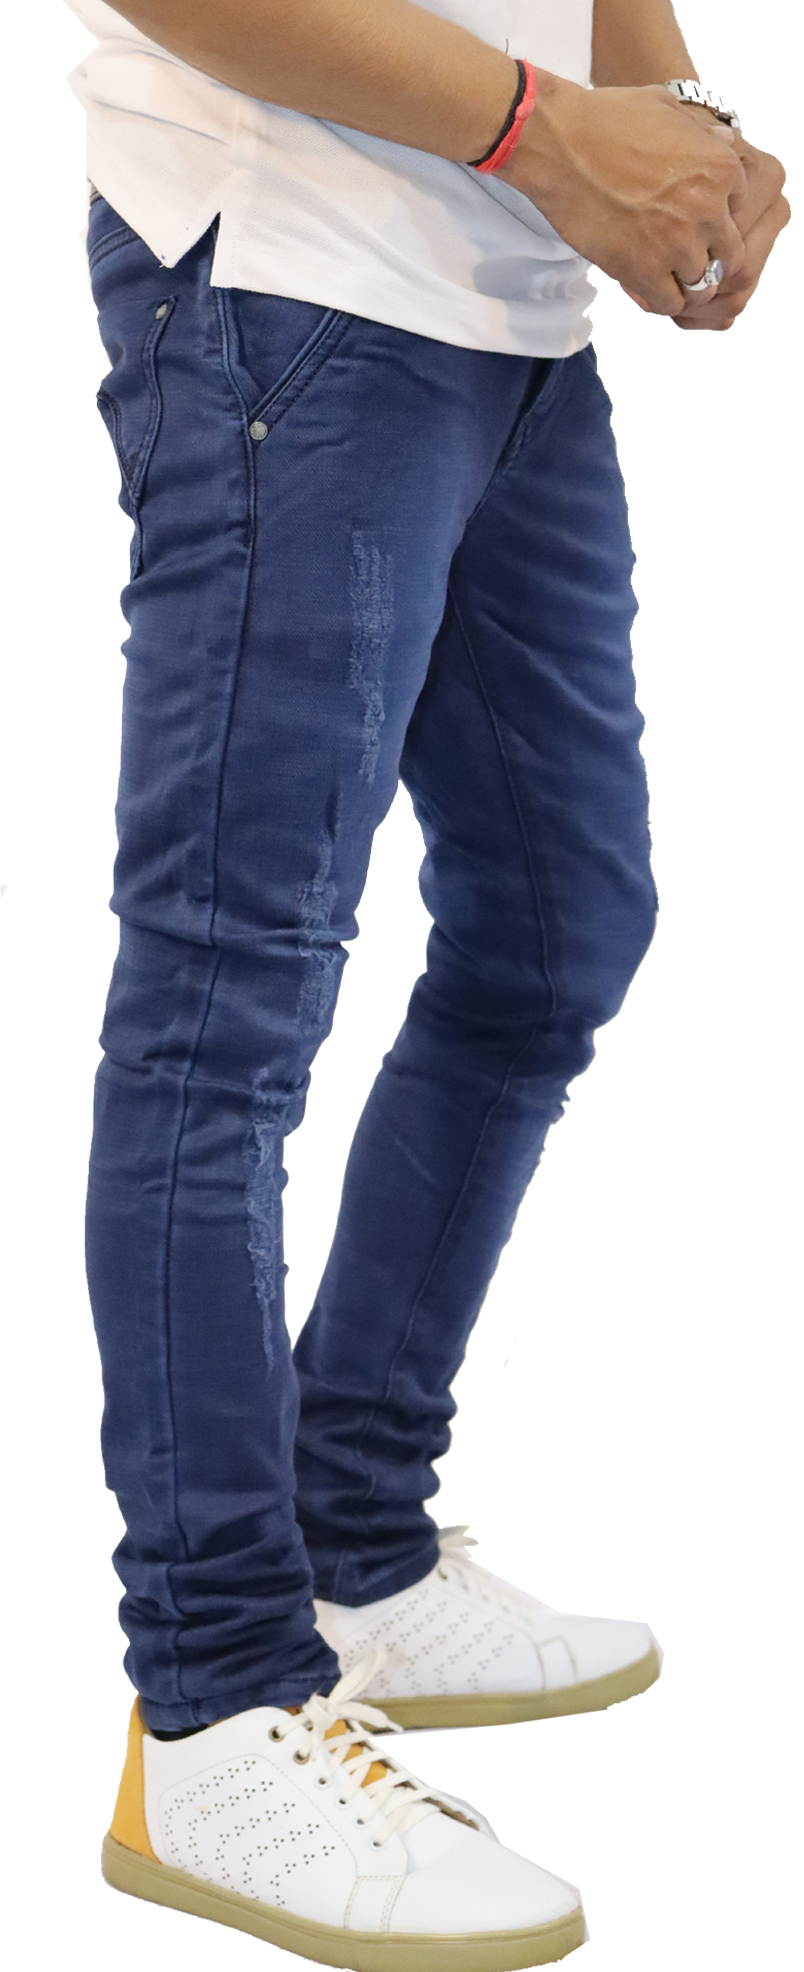 Stylish & Trendy Slight Damage Jeans